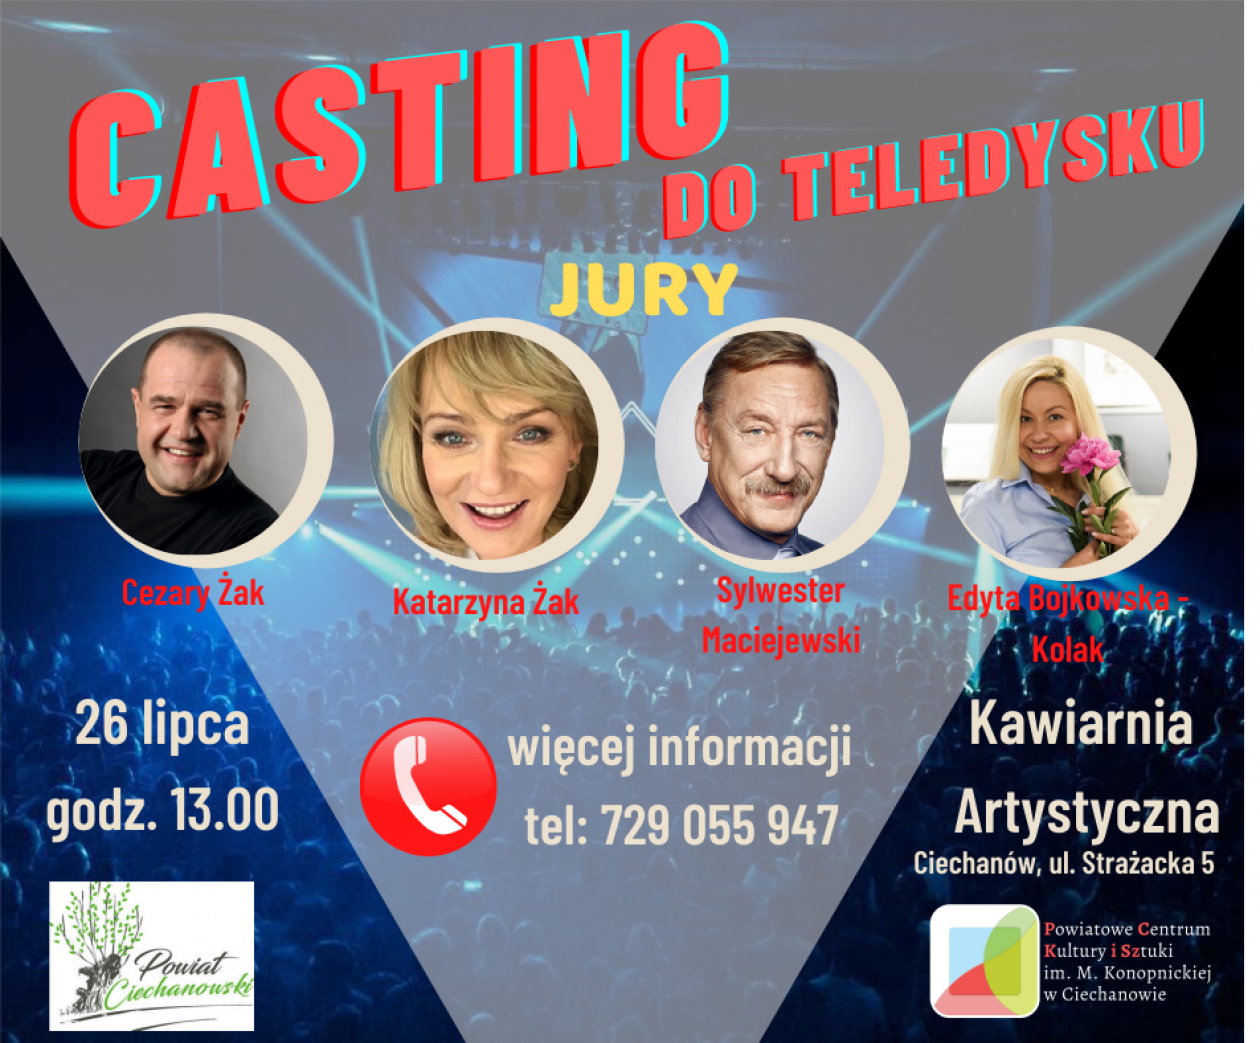 Pamiętacie casting do teledysku organizowany przez Starostwo Powiatowe w Ciechanowie? Znamy wyniki! 